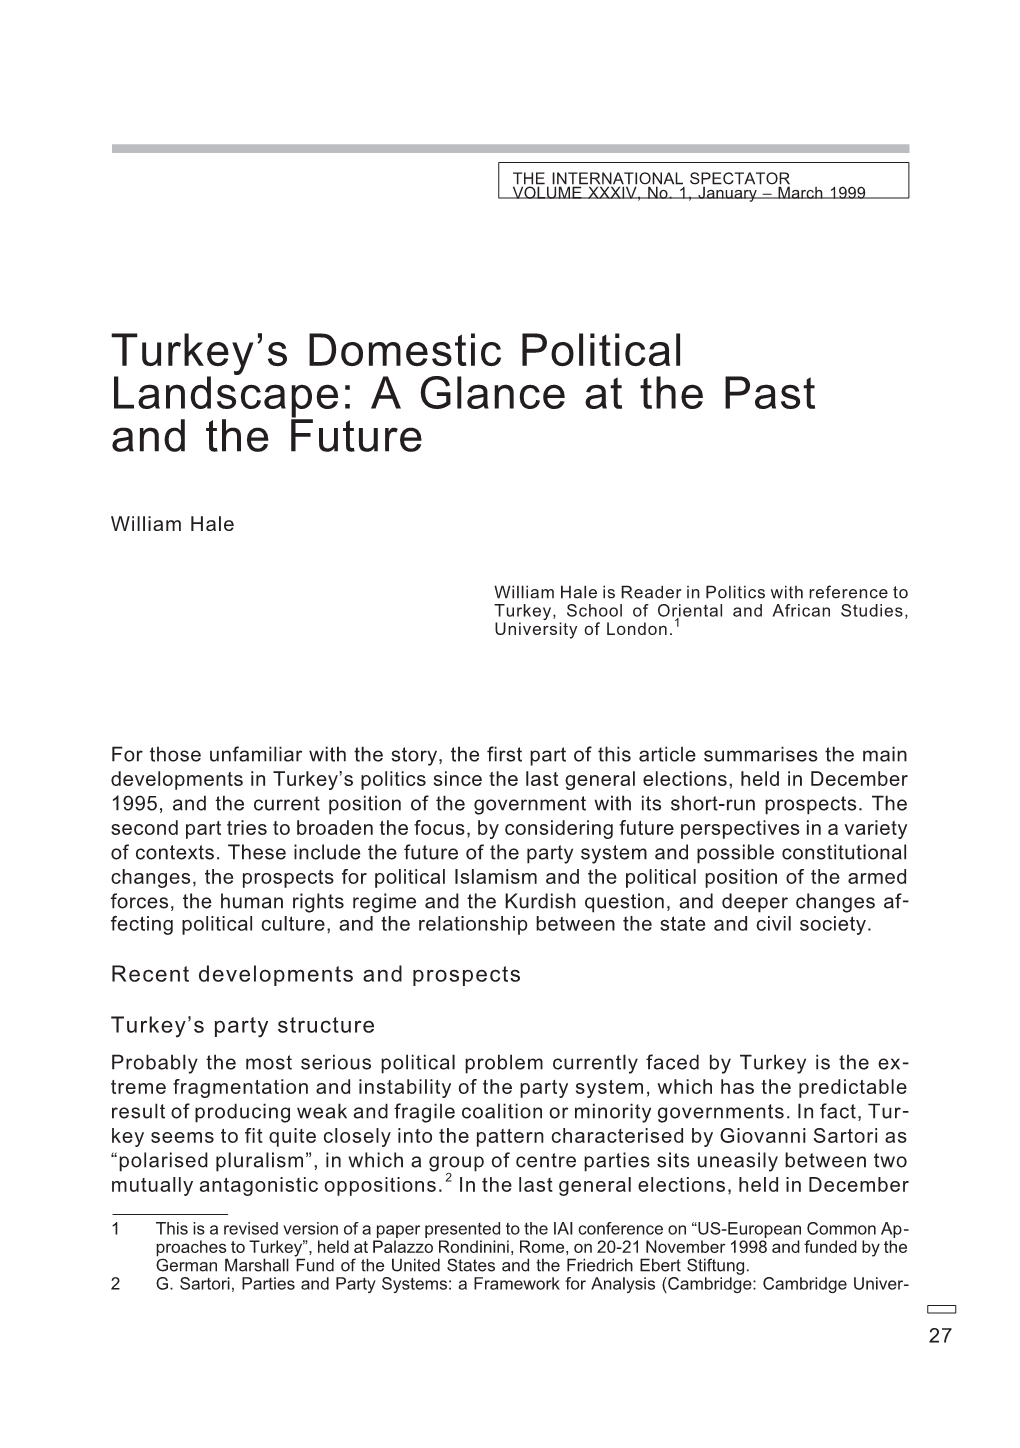 Turkey's Domestic Political Landscape